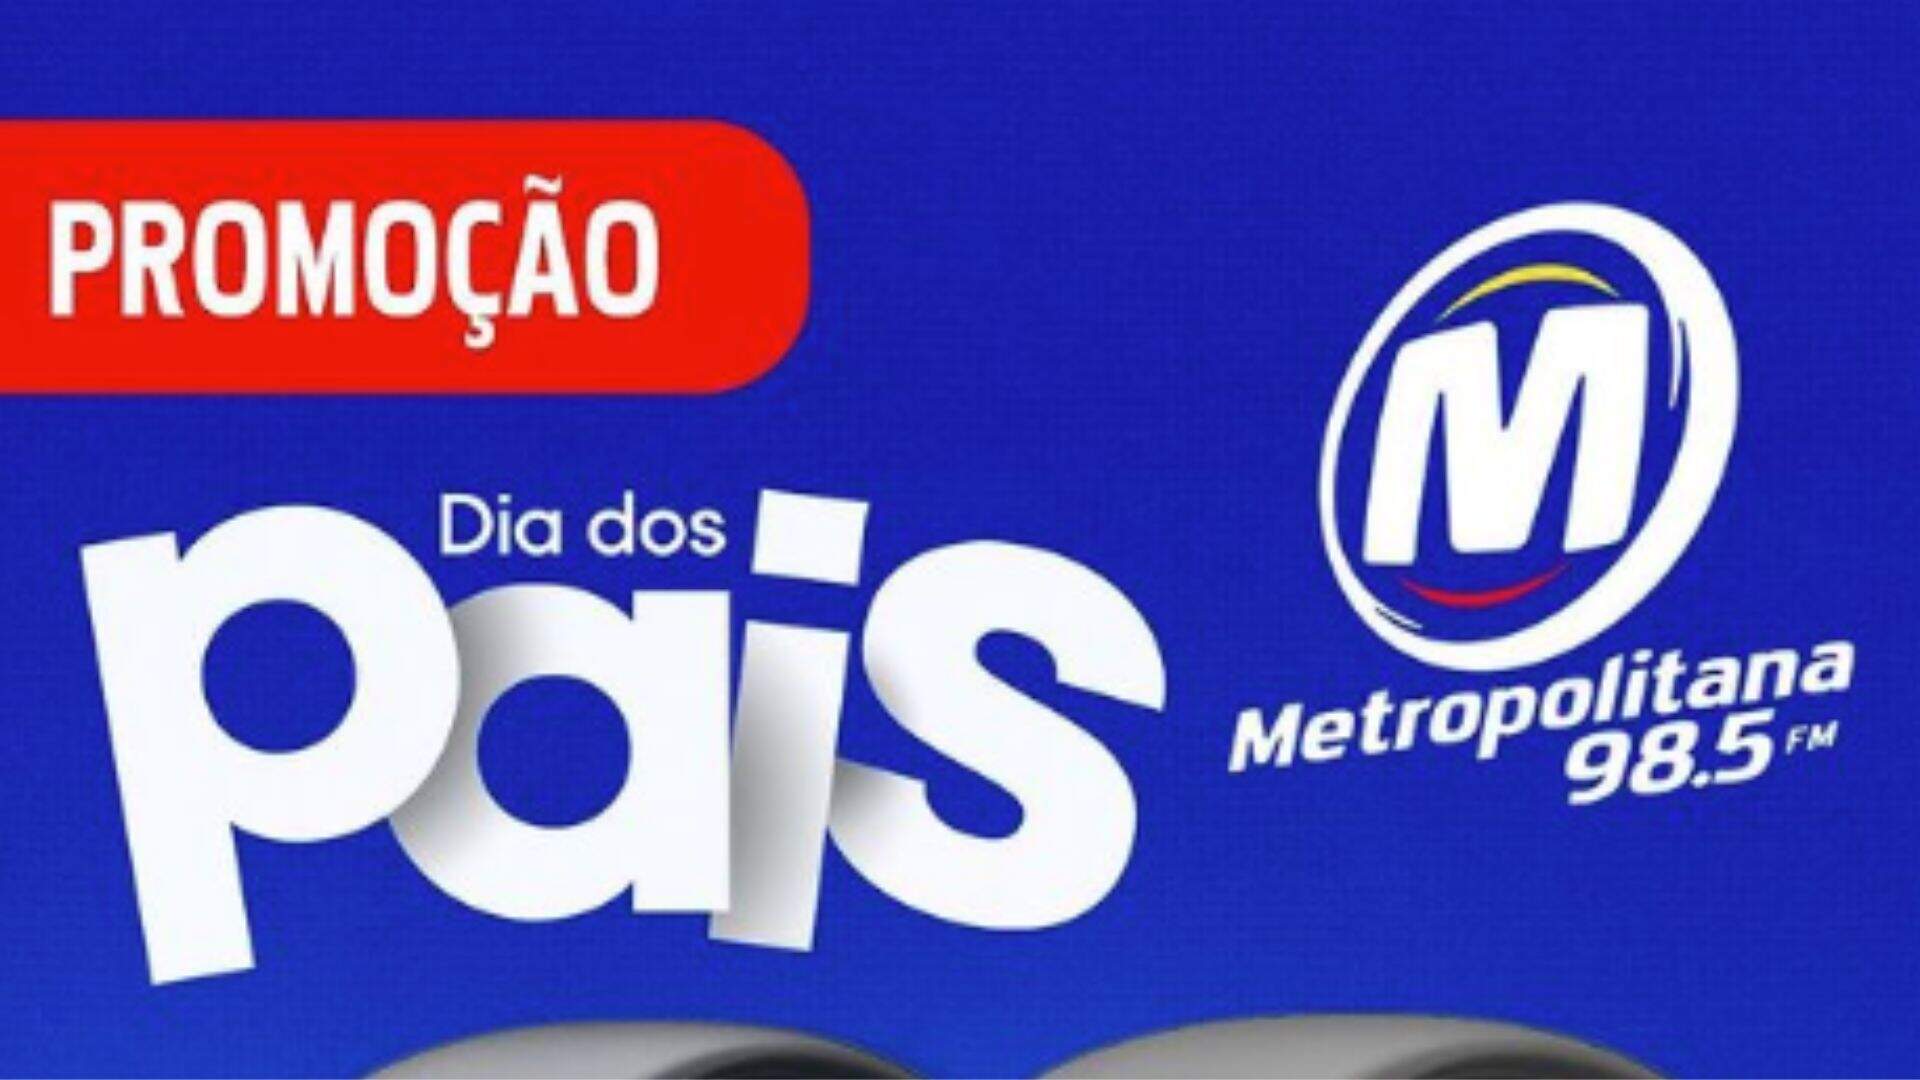 [ENCERRADA] Promoção: DIA DOS PAIS COM SMARTWATCHES NA METROPOLITANA FM - Metropolitana FM